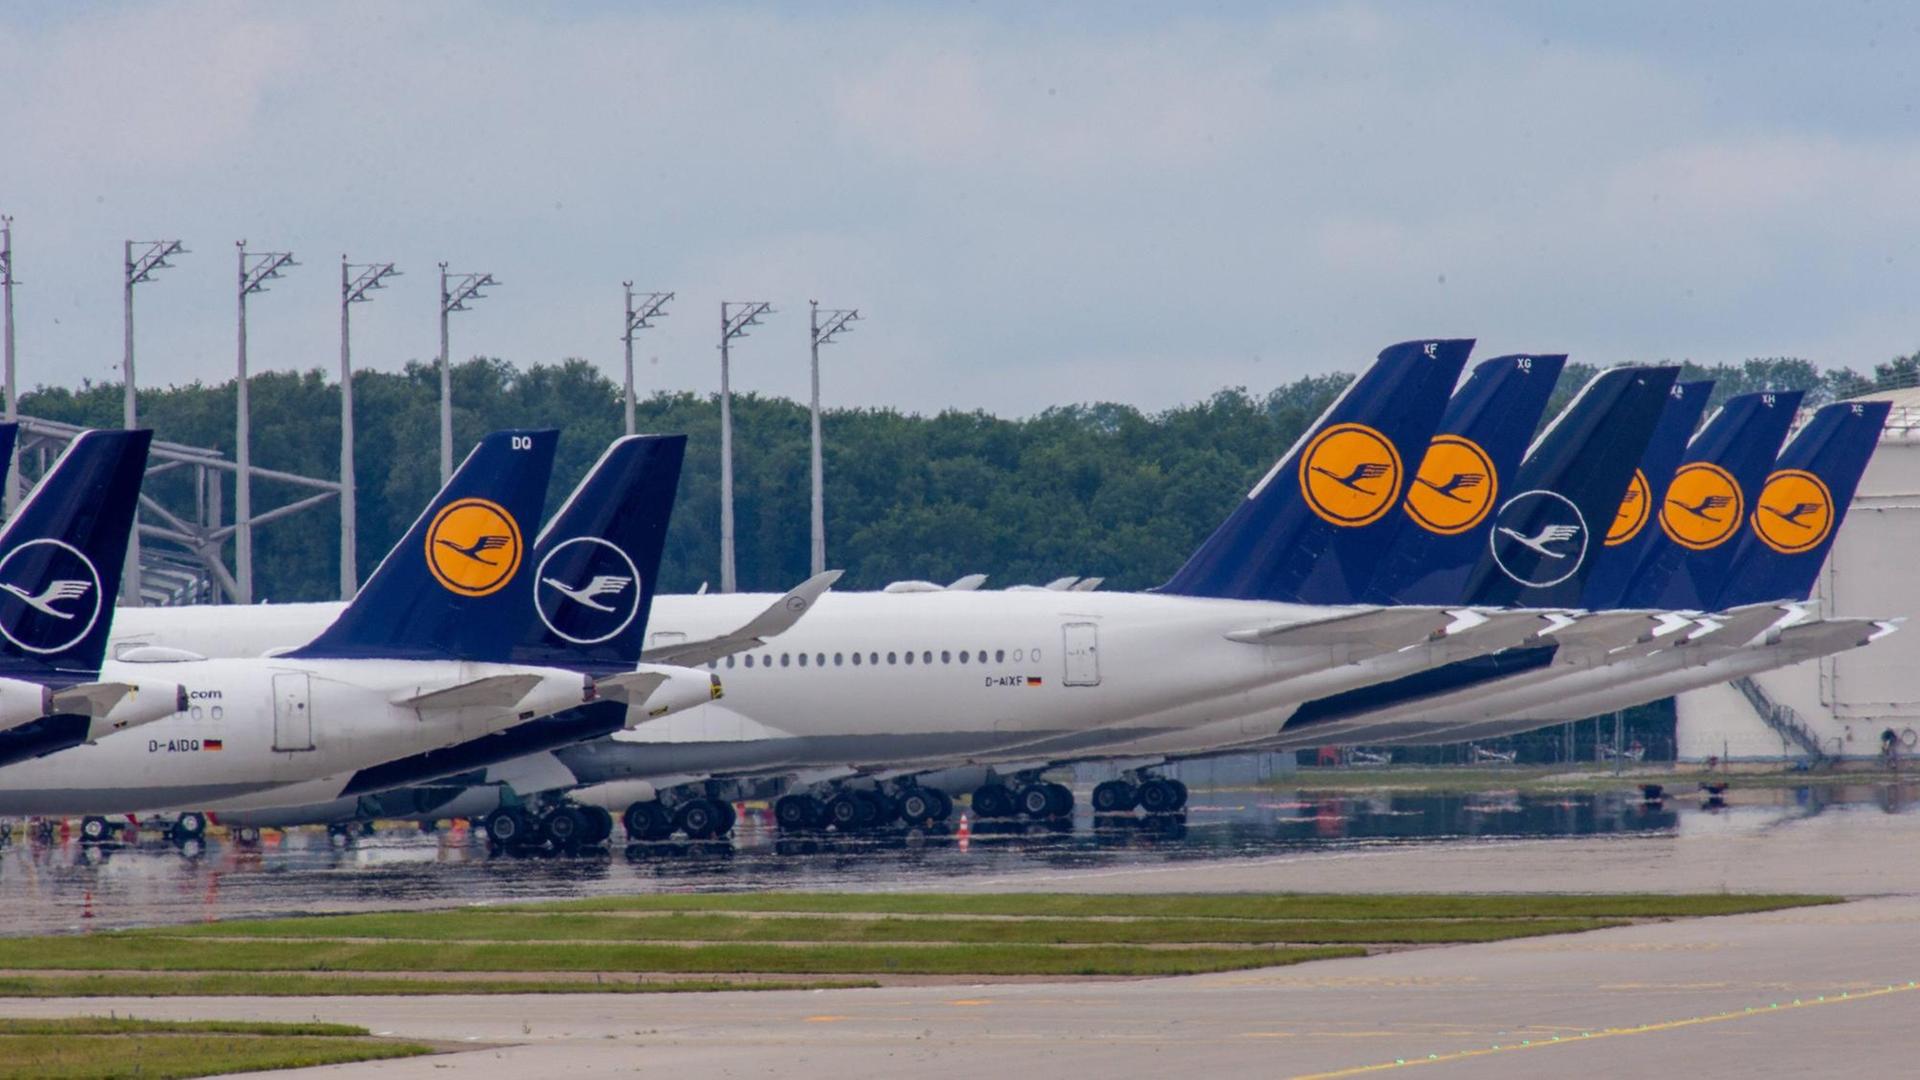 Flugzeuge der Lufthansa stehen am Flughafen in München am Boden.